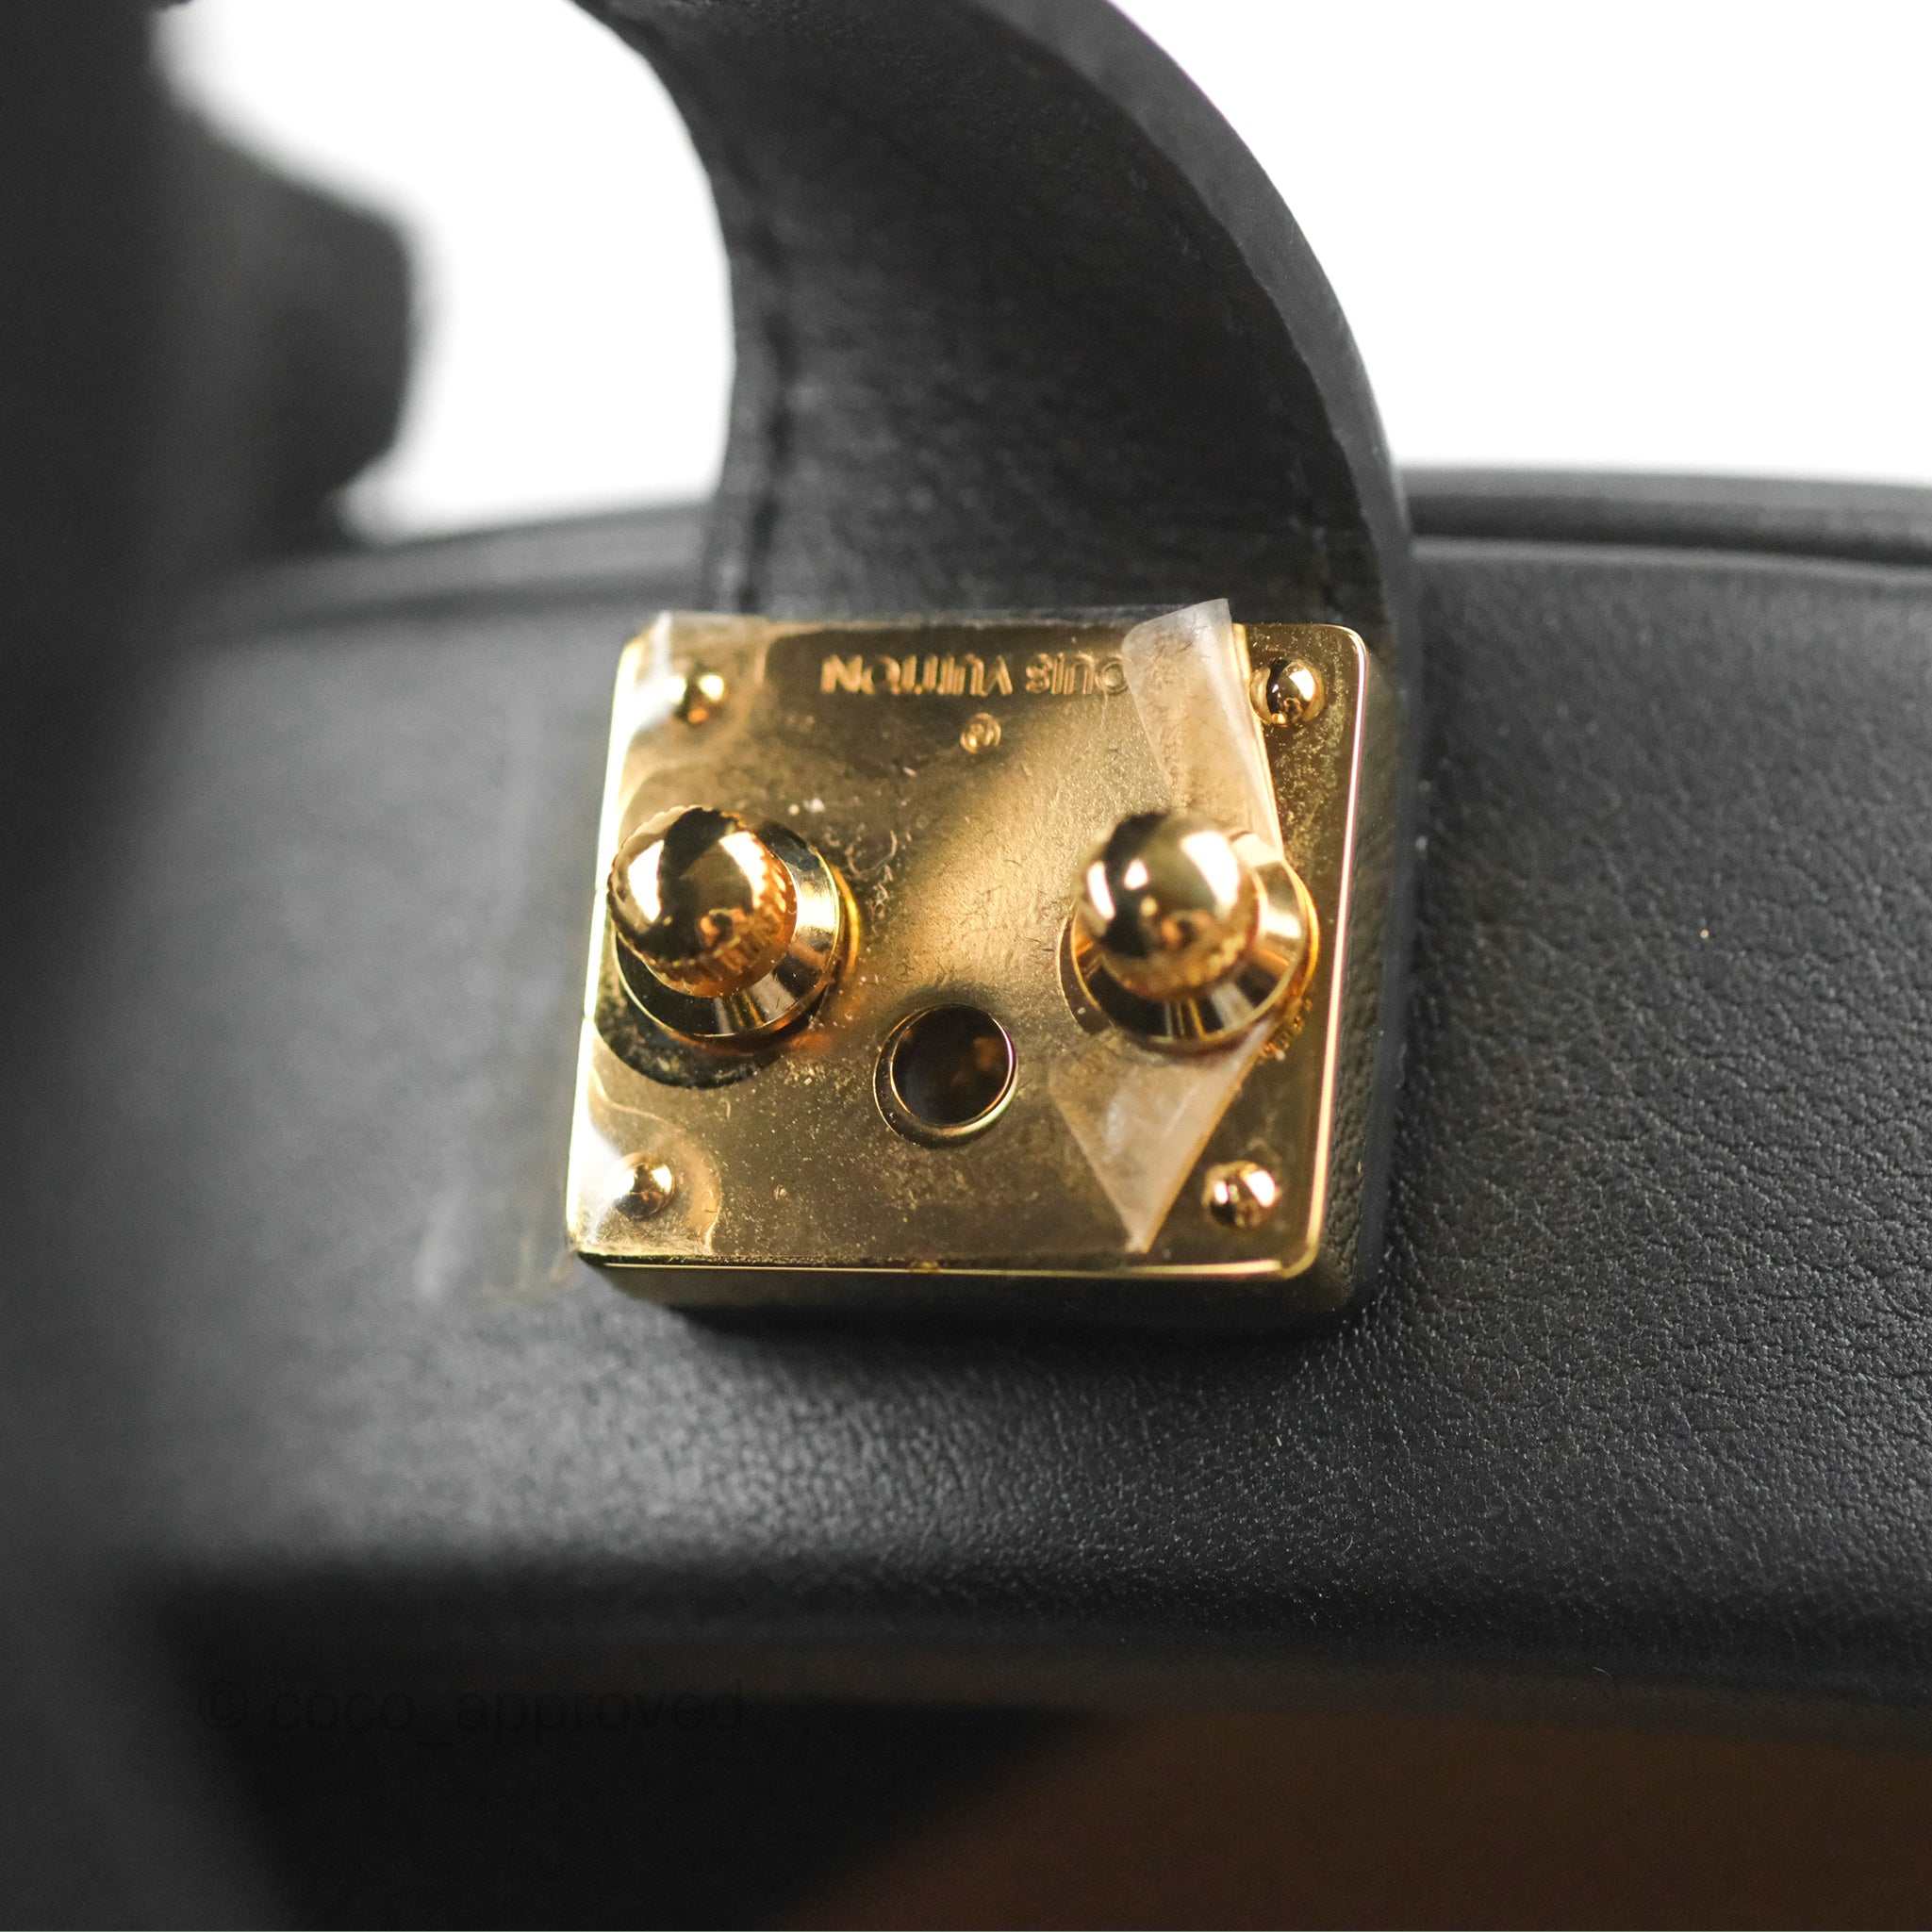 ✨NEW ARRIVAL✨ Louis Vuitton Reverse Monogram Petite Boite Chapeau Bag  $5,400.00 Microchipped Material: Reverse monogram canvas & black…